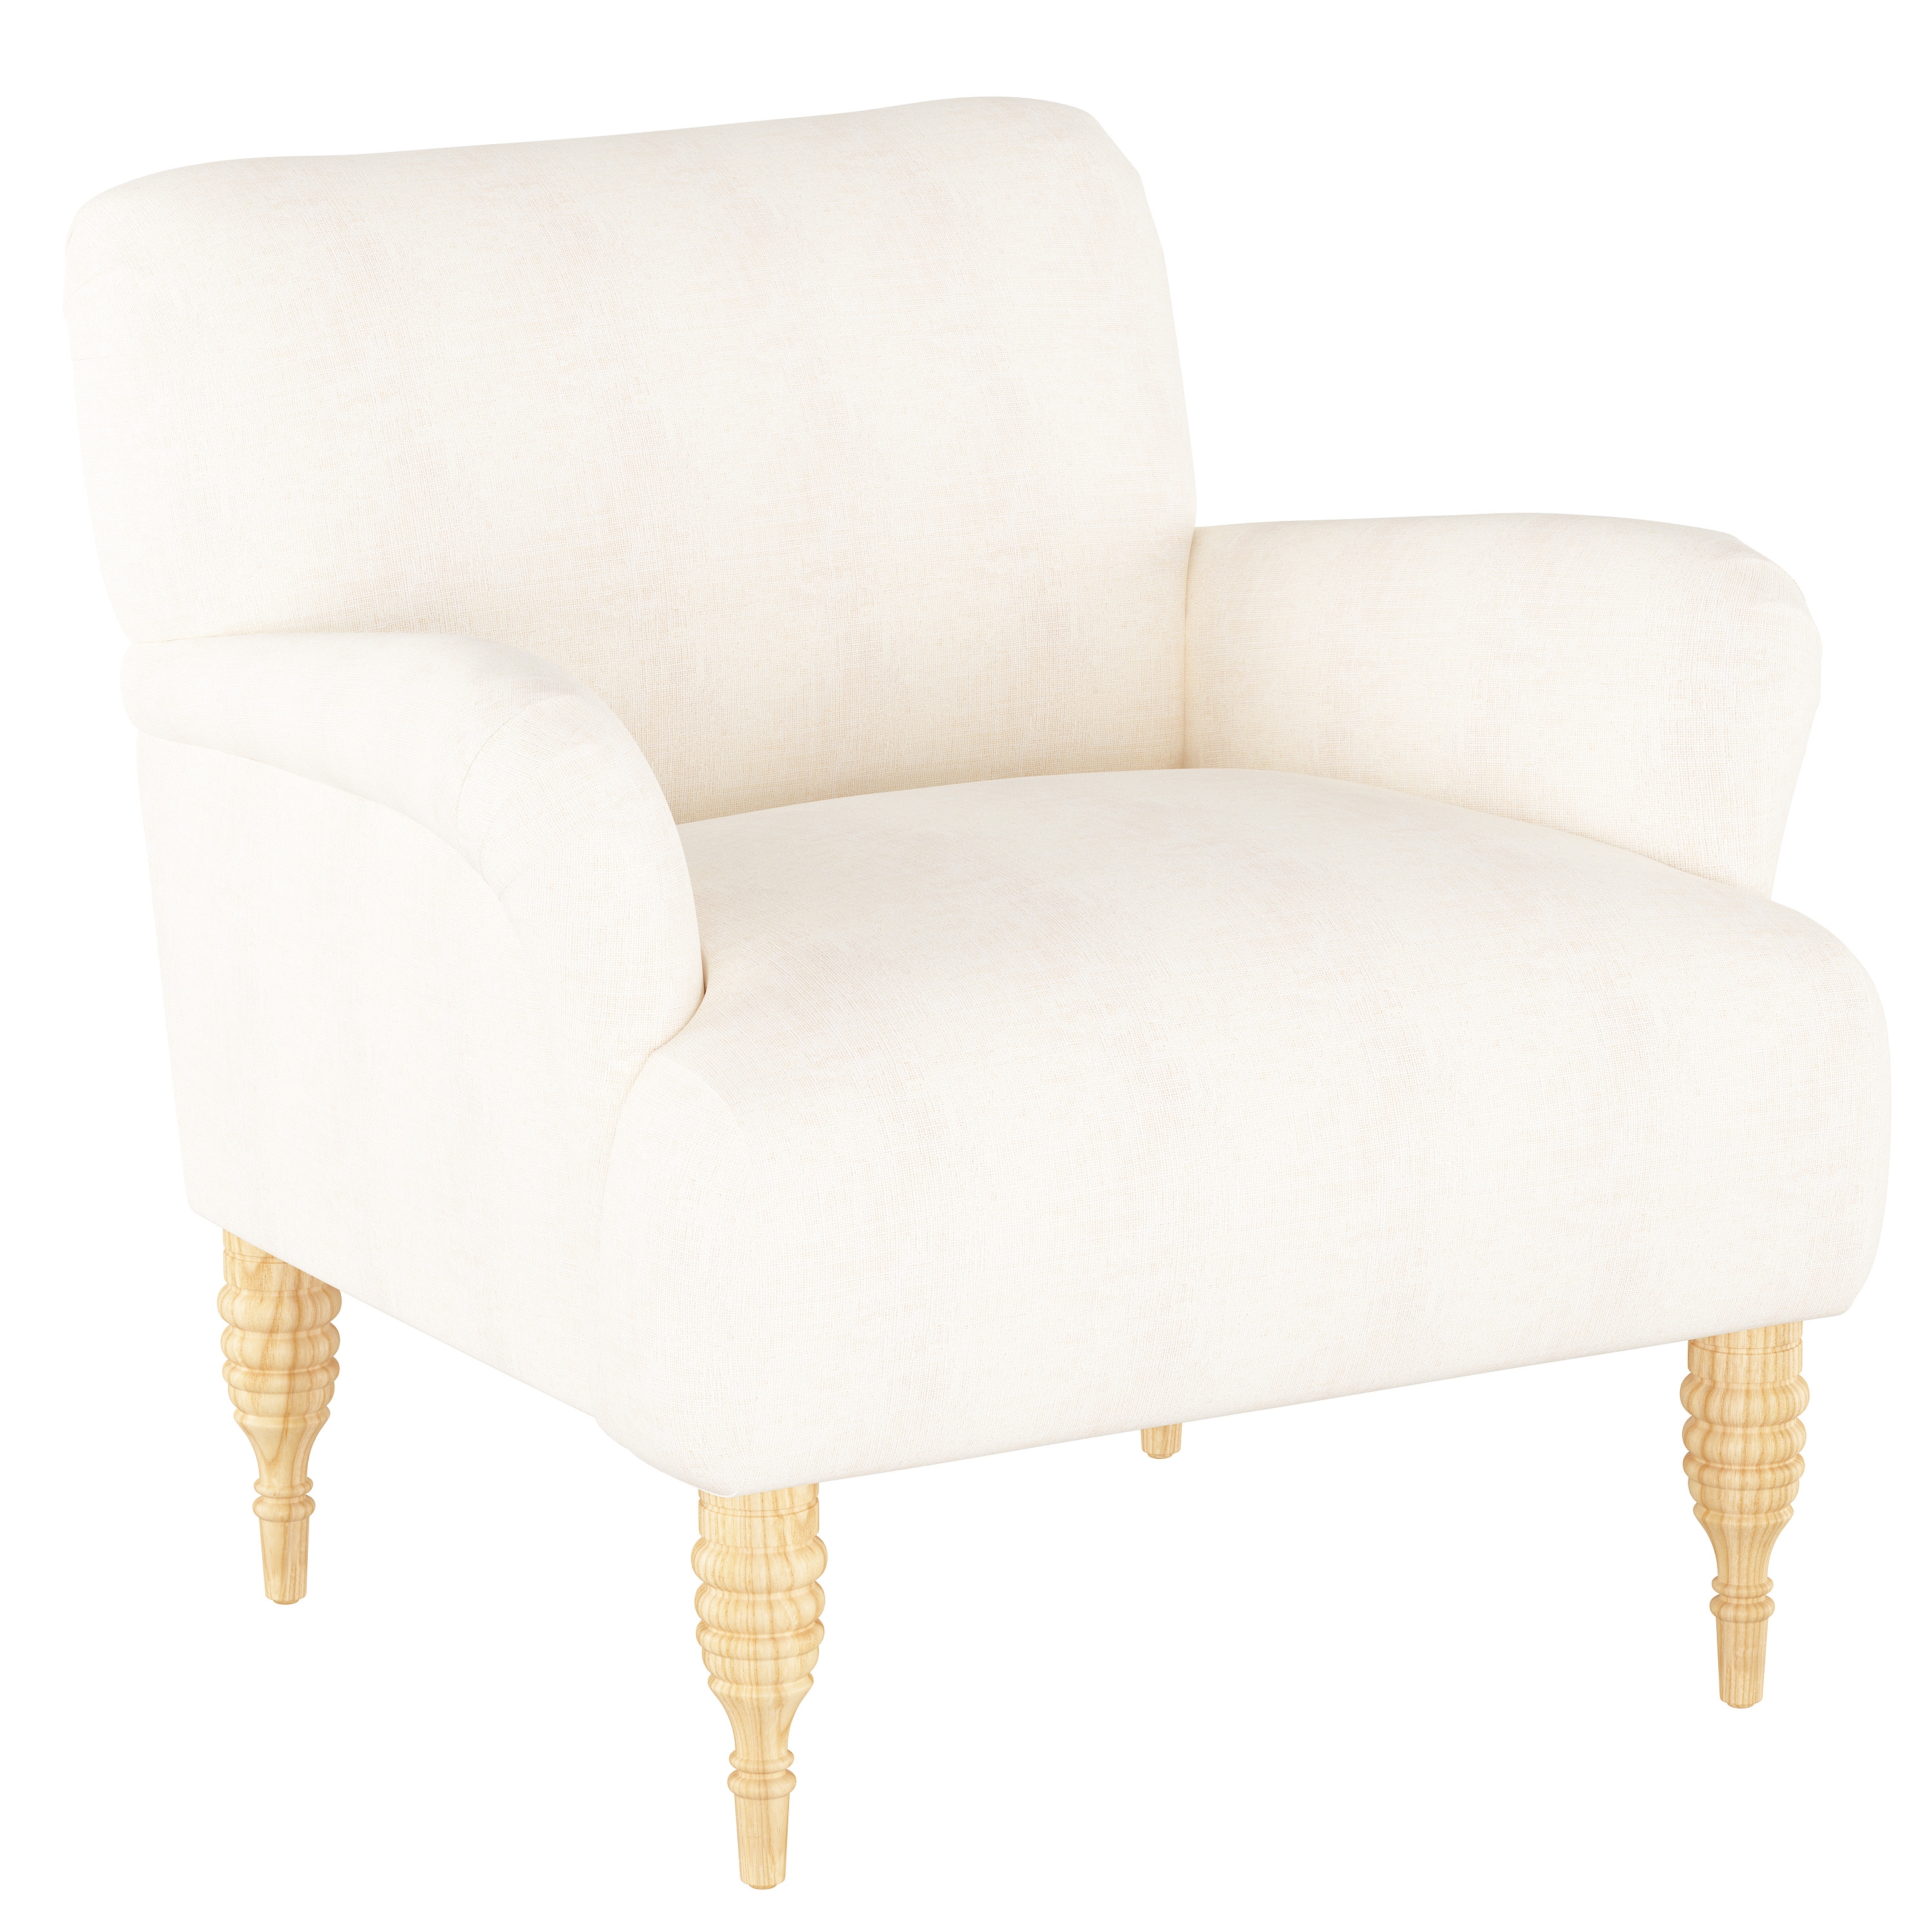 Merrill Chair, White - Image 0